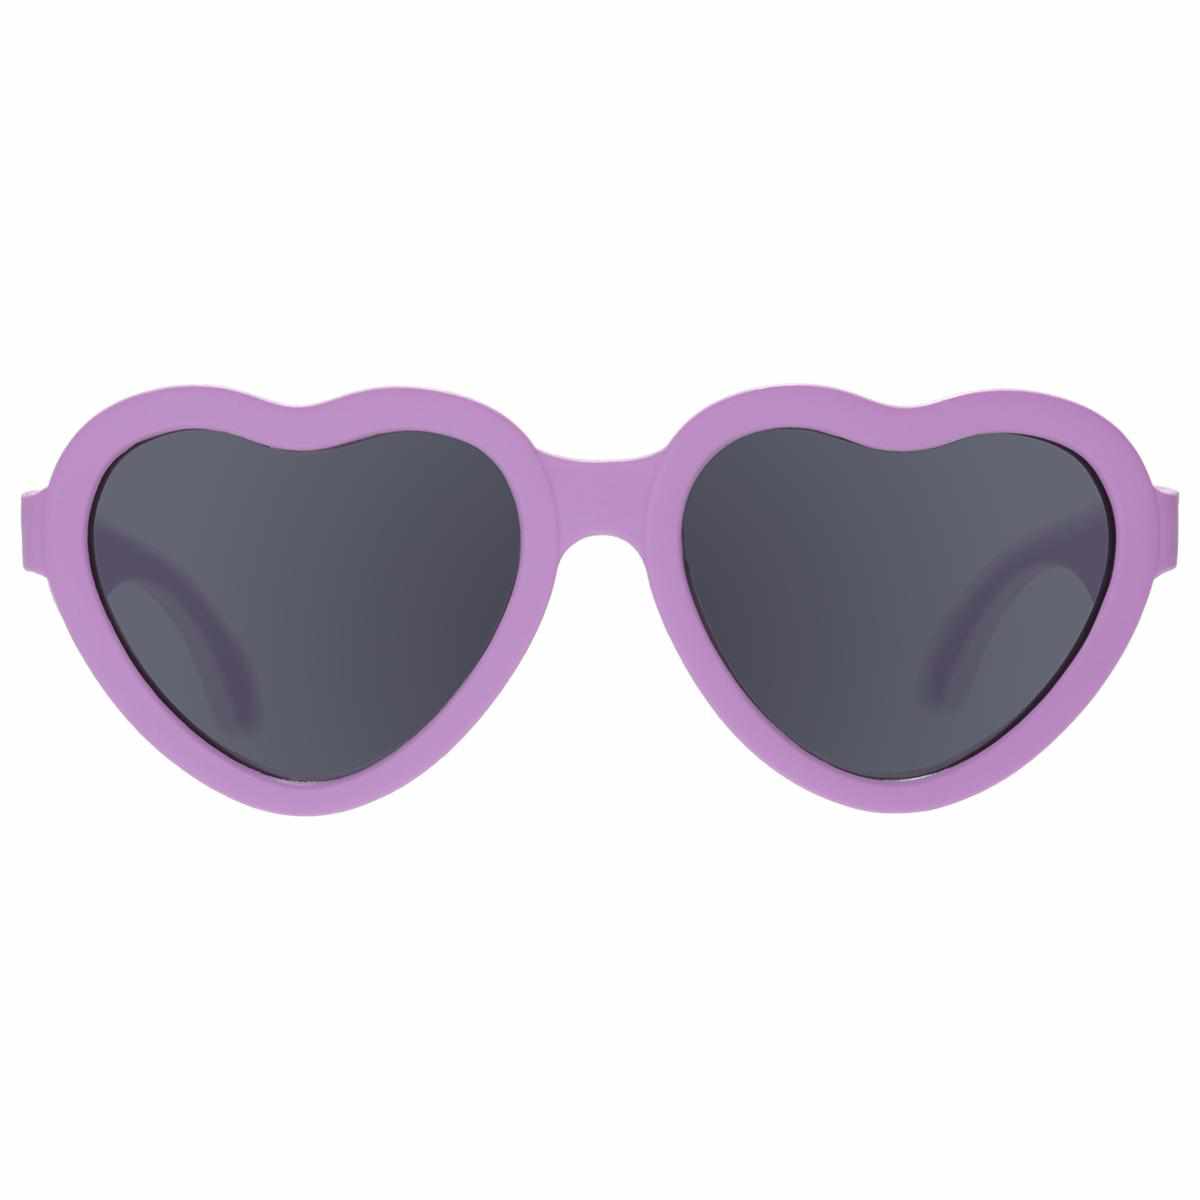 Ooh La Lavander Heart Sunglasses-Babiators-Lasting Impressions